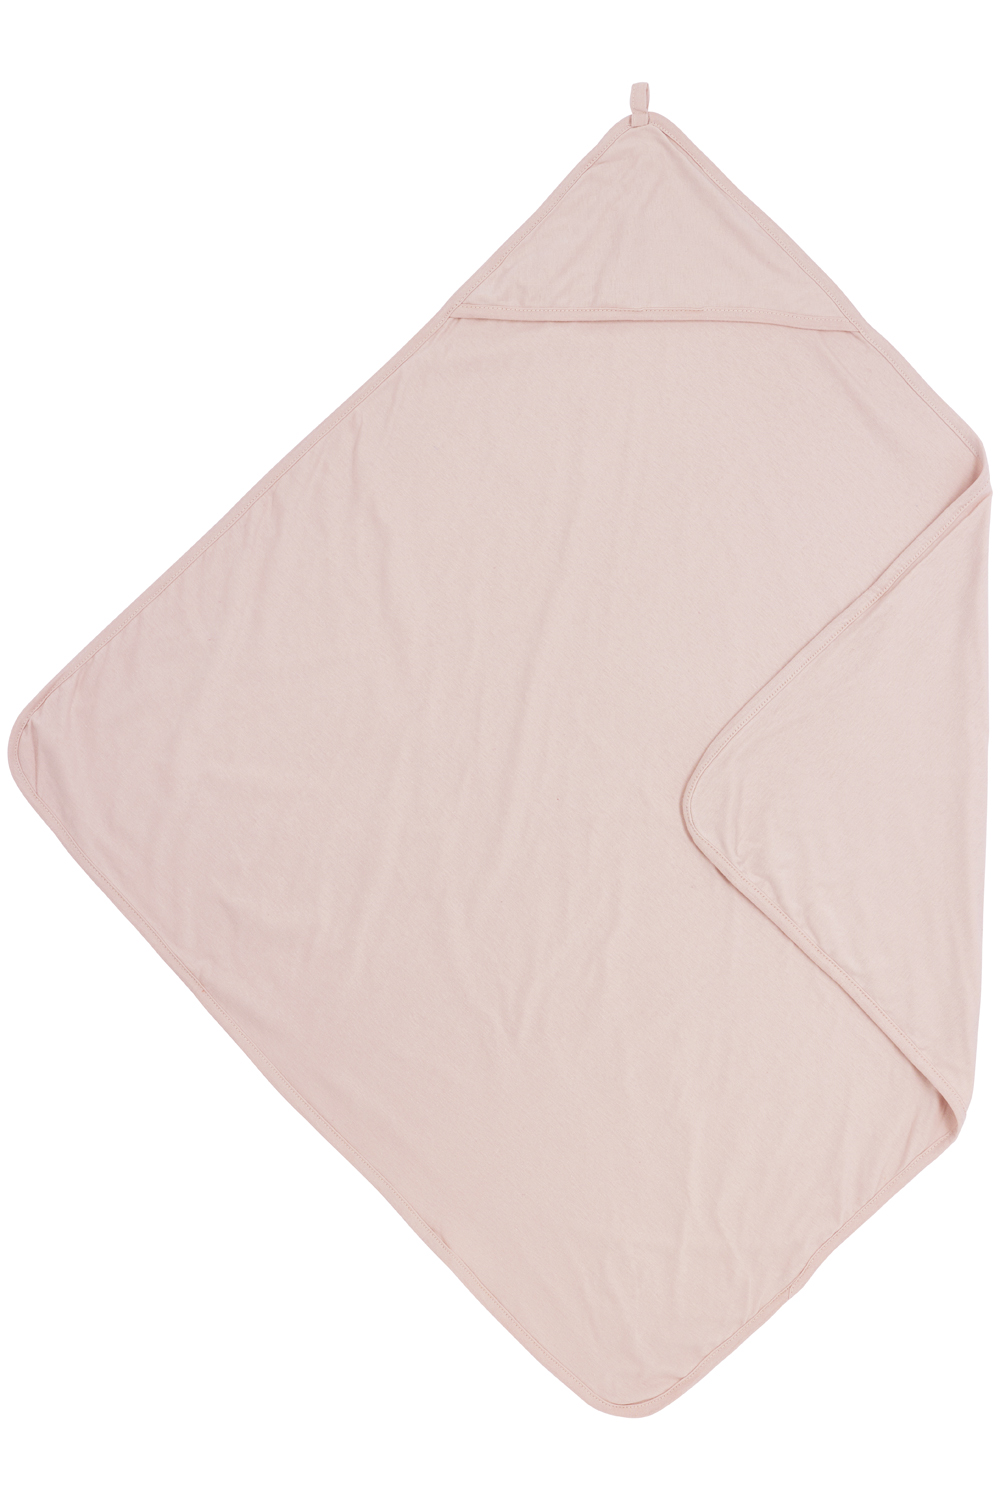 Bathcape Basic Jersey - Soft Pink - 80x80cm